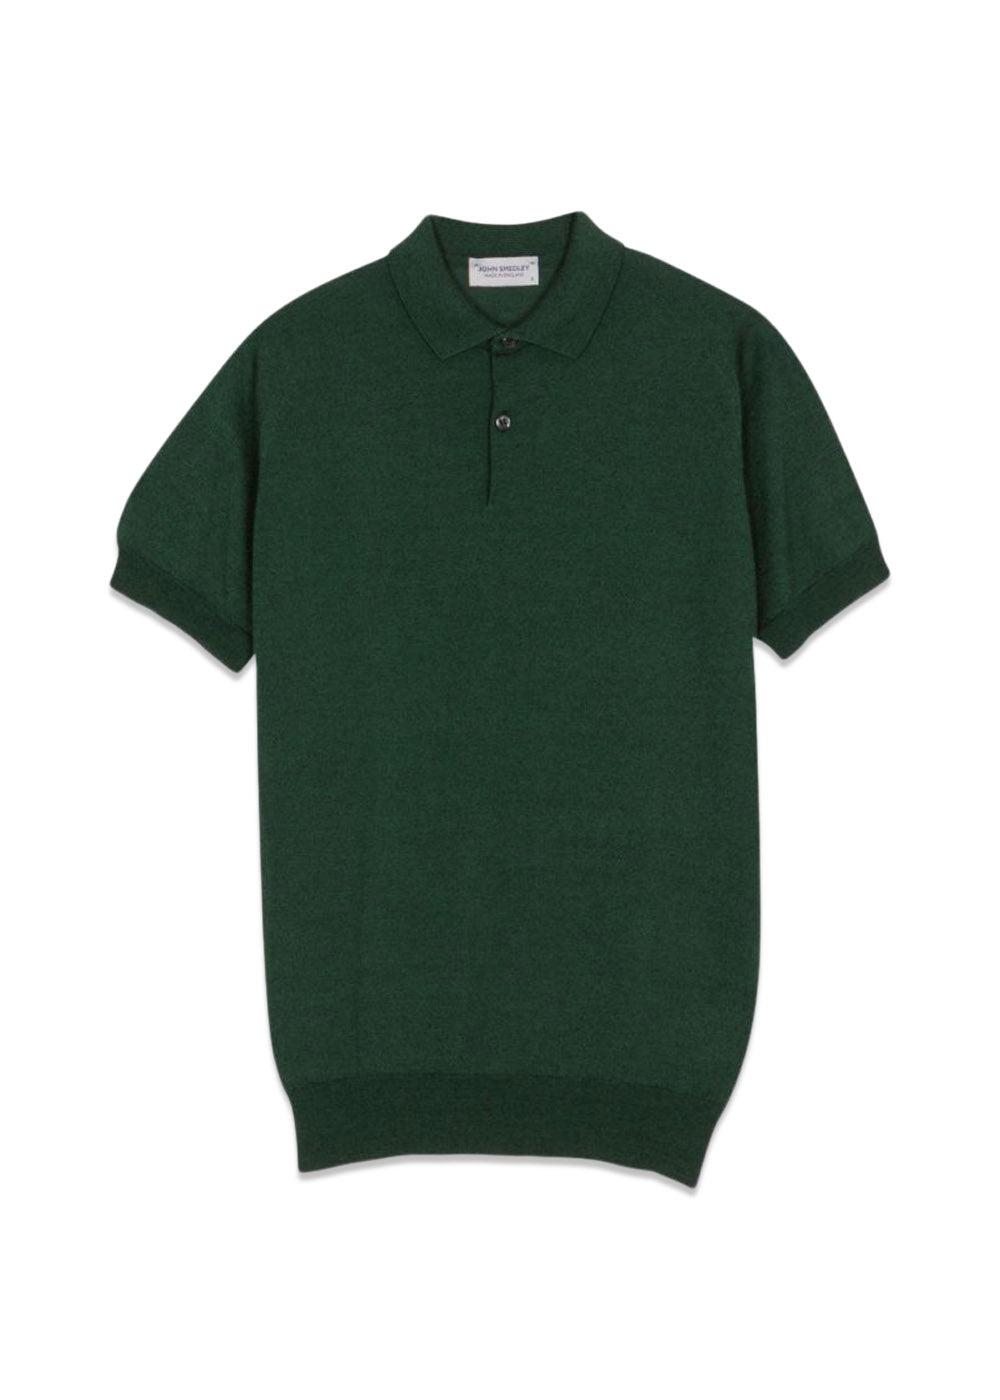 John Smedleys Cpayton SS Polo Shirt - Bottle Green. Køb t-shirts her.